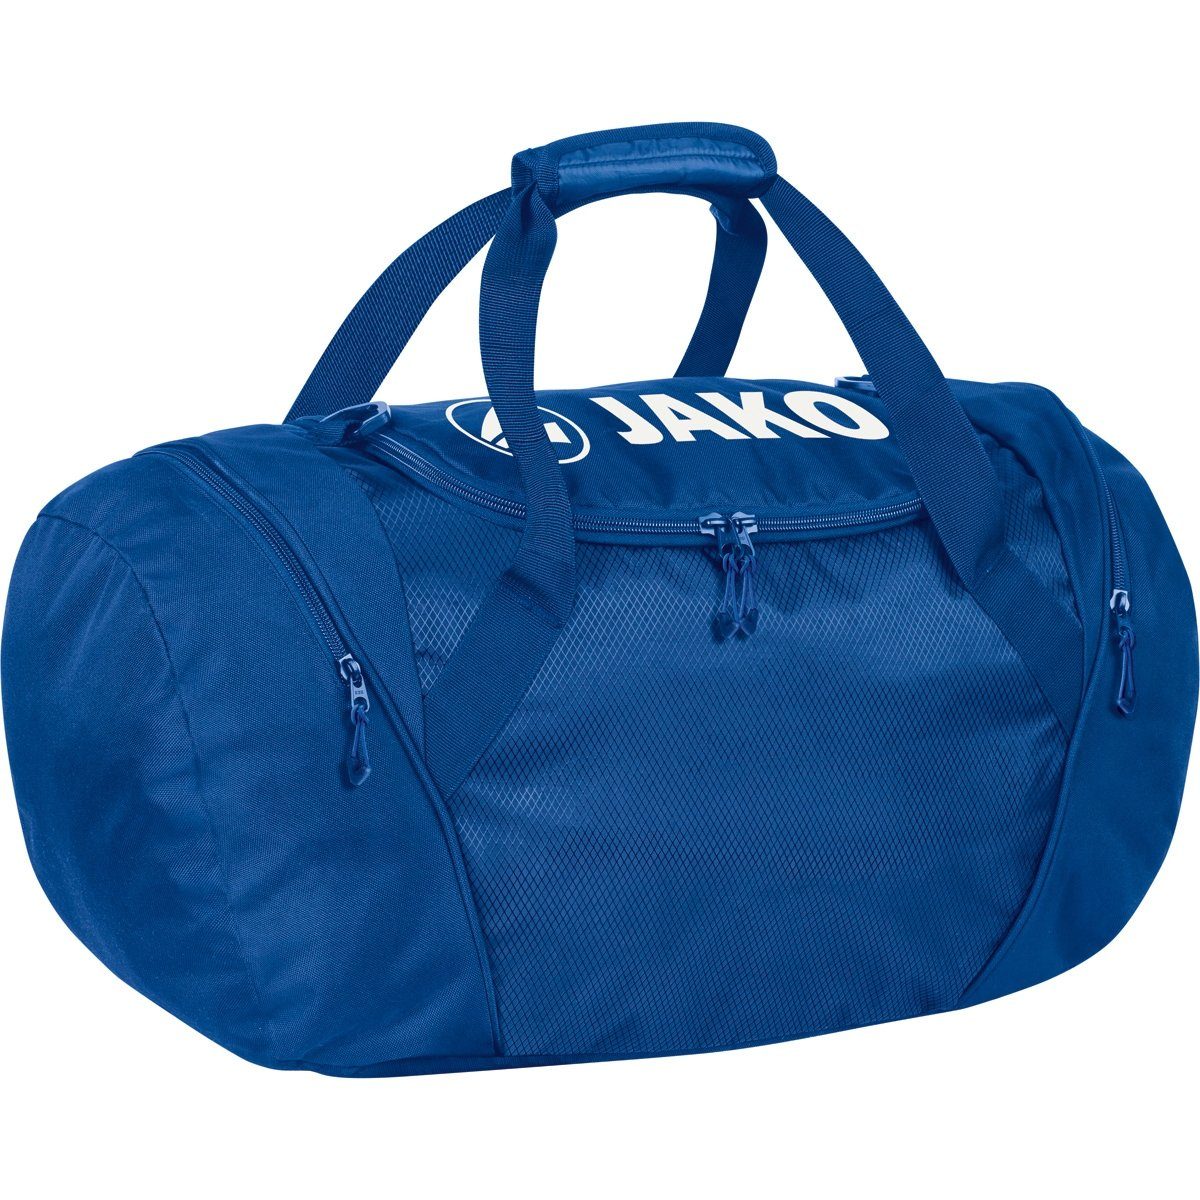 Jako Sporttasche Rucksack und Sporttasche in One - 1989 04 royal blau (Größe: M)